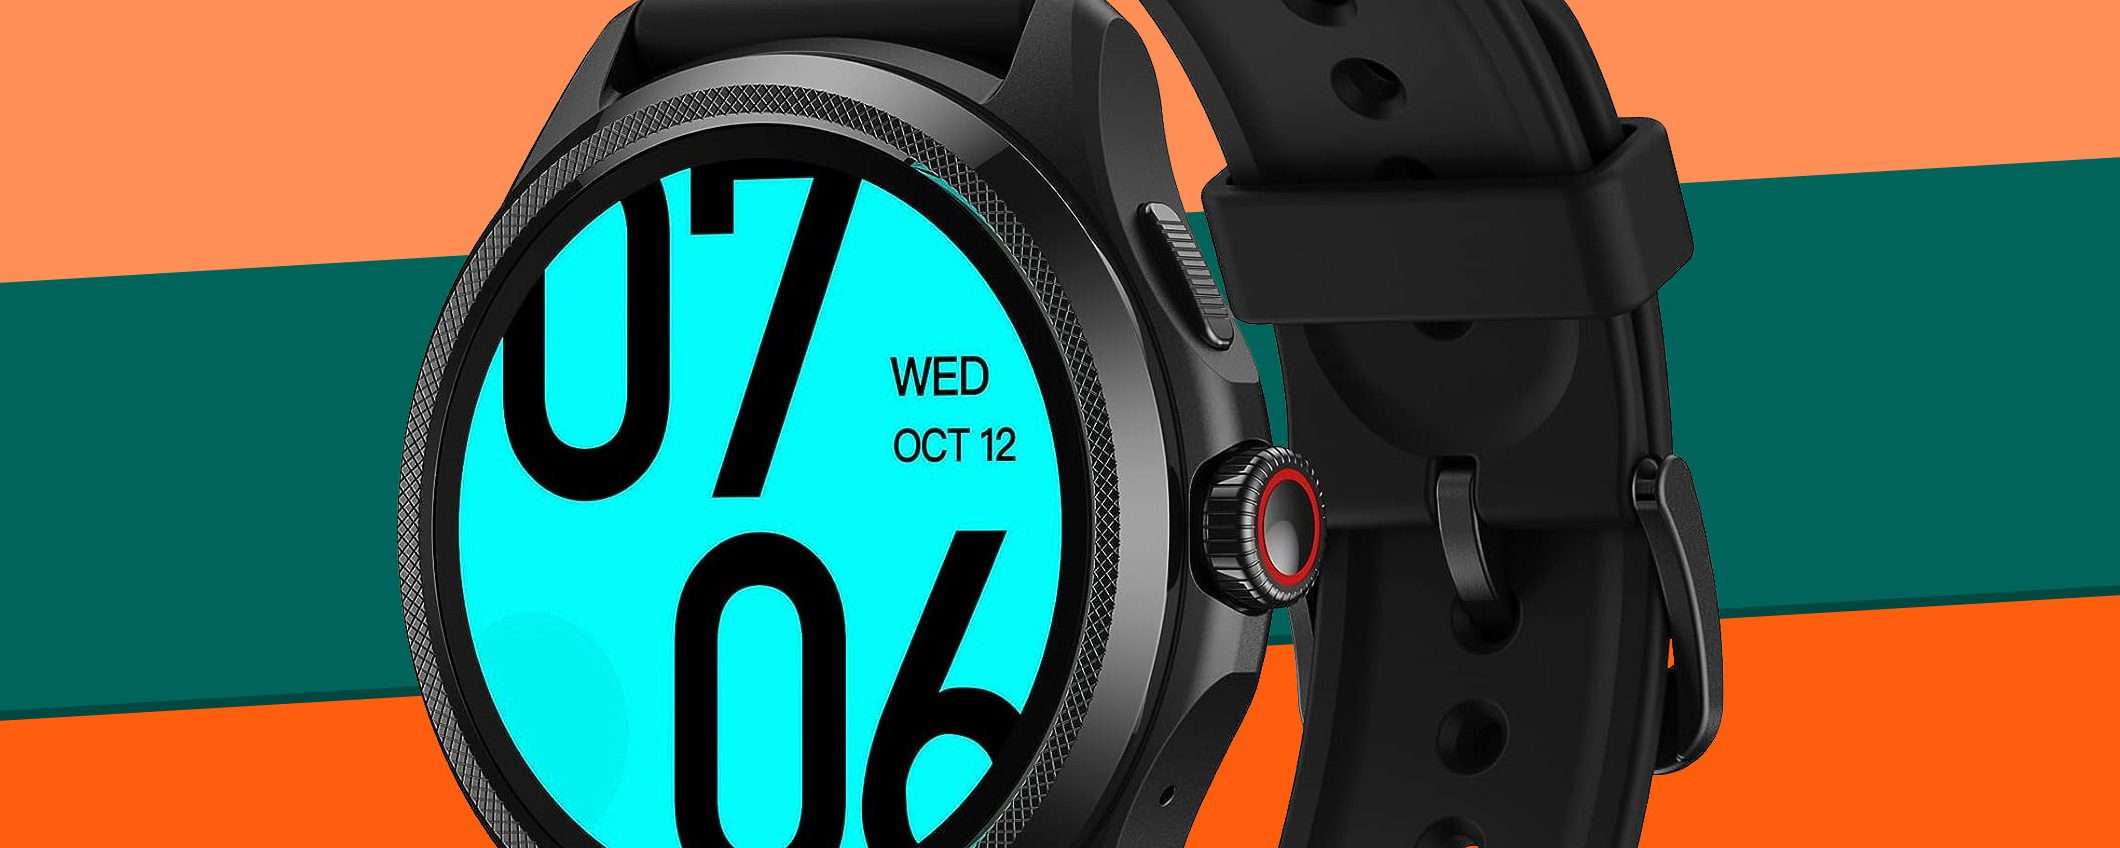 Ticwatch Pro 5 scende di prezzo su Amazon: raggiunto il nuovo MINIMO STORICO!